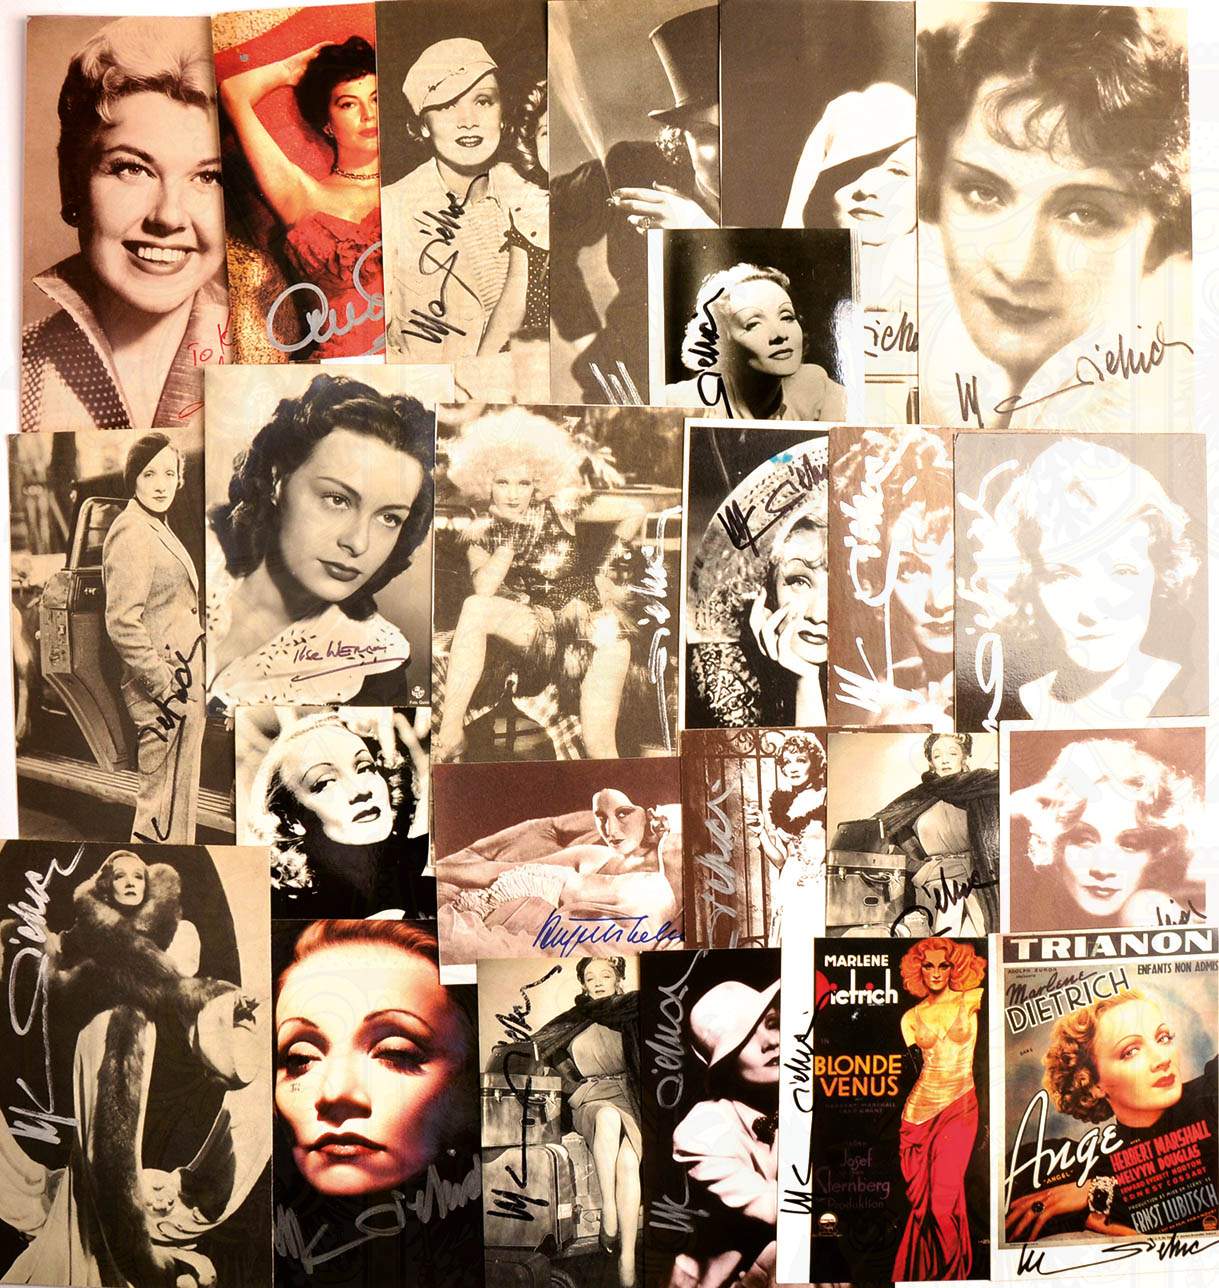 SAMMLUNG 52 FILMSTAR-AUTOGRAPHEN, davon 27 St. Marlene Dietrich, auf Fotos, Repro-AK, Druck- u. - Image 3 of 3